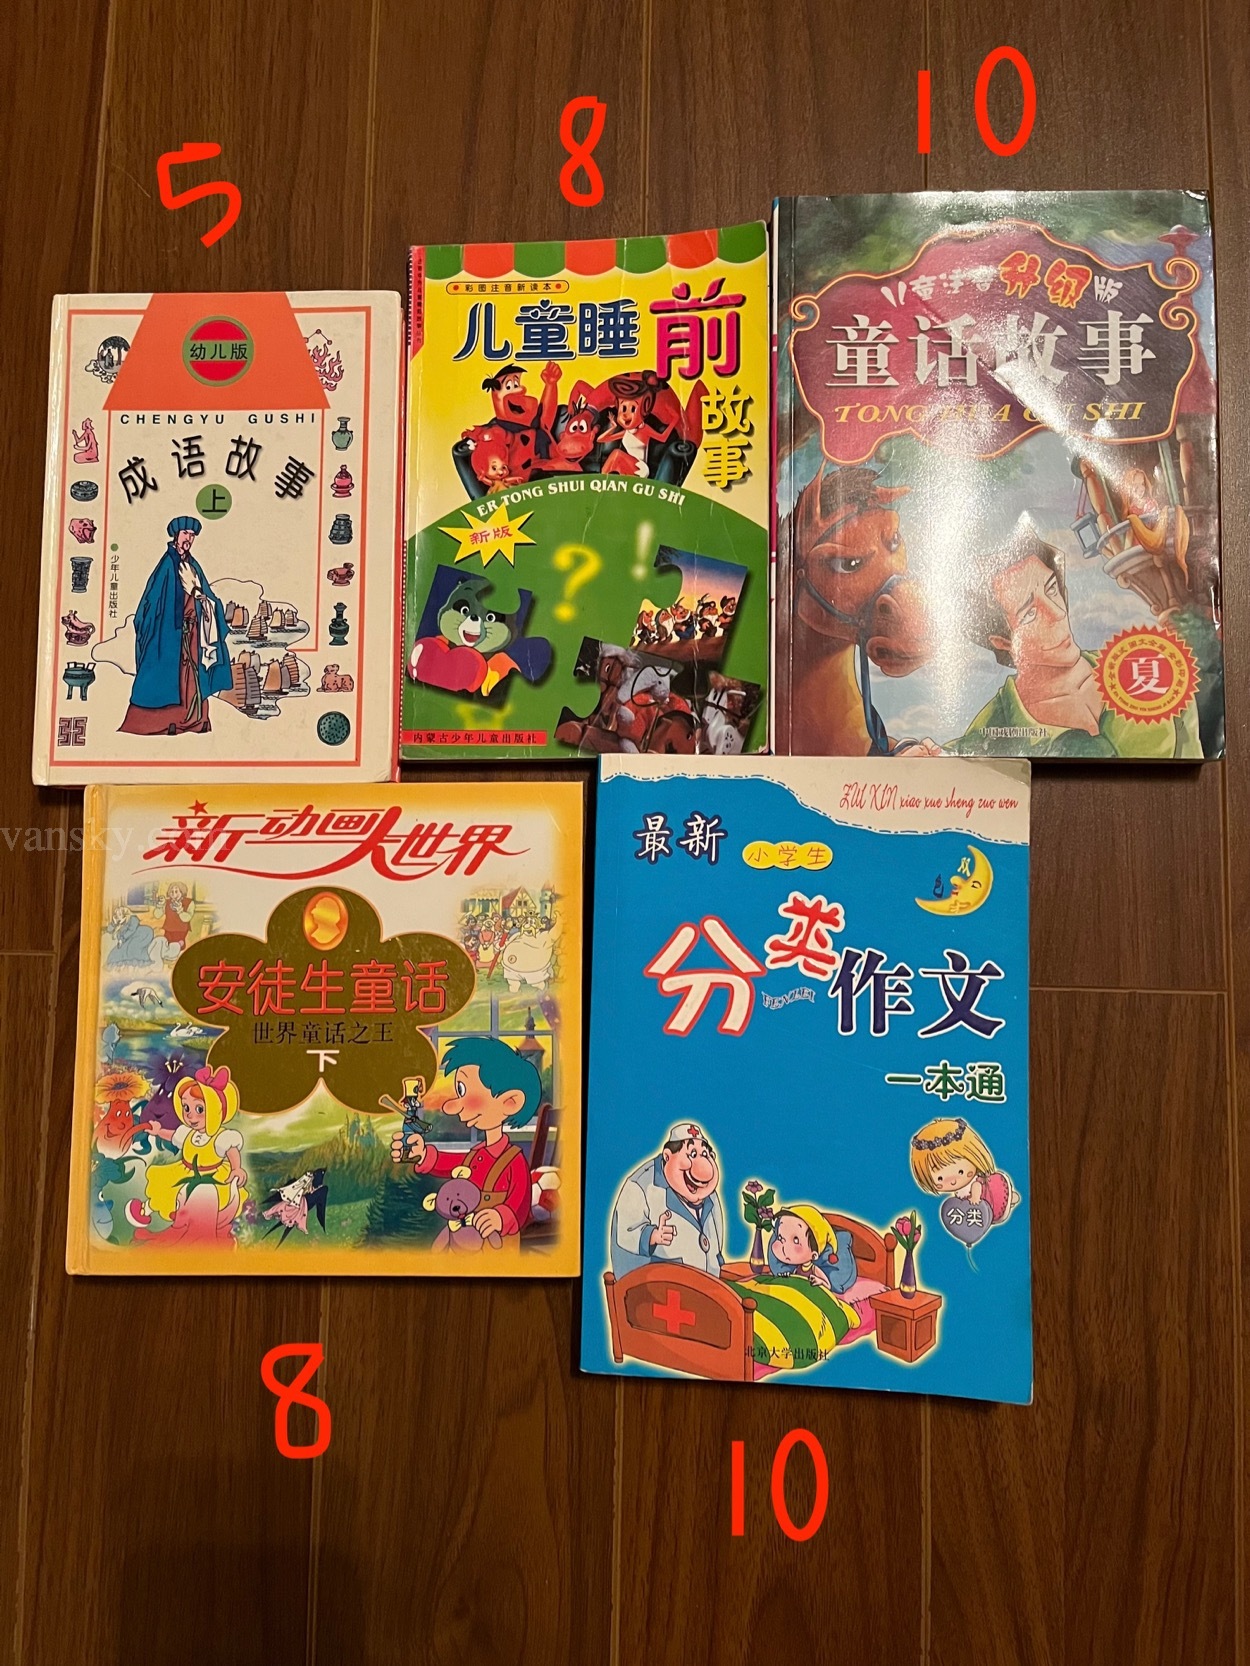 220102173907_chinese children book.jpg